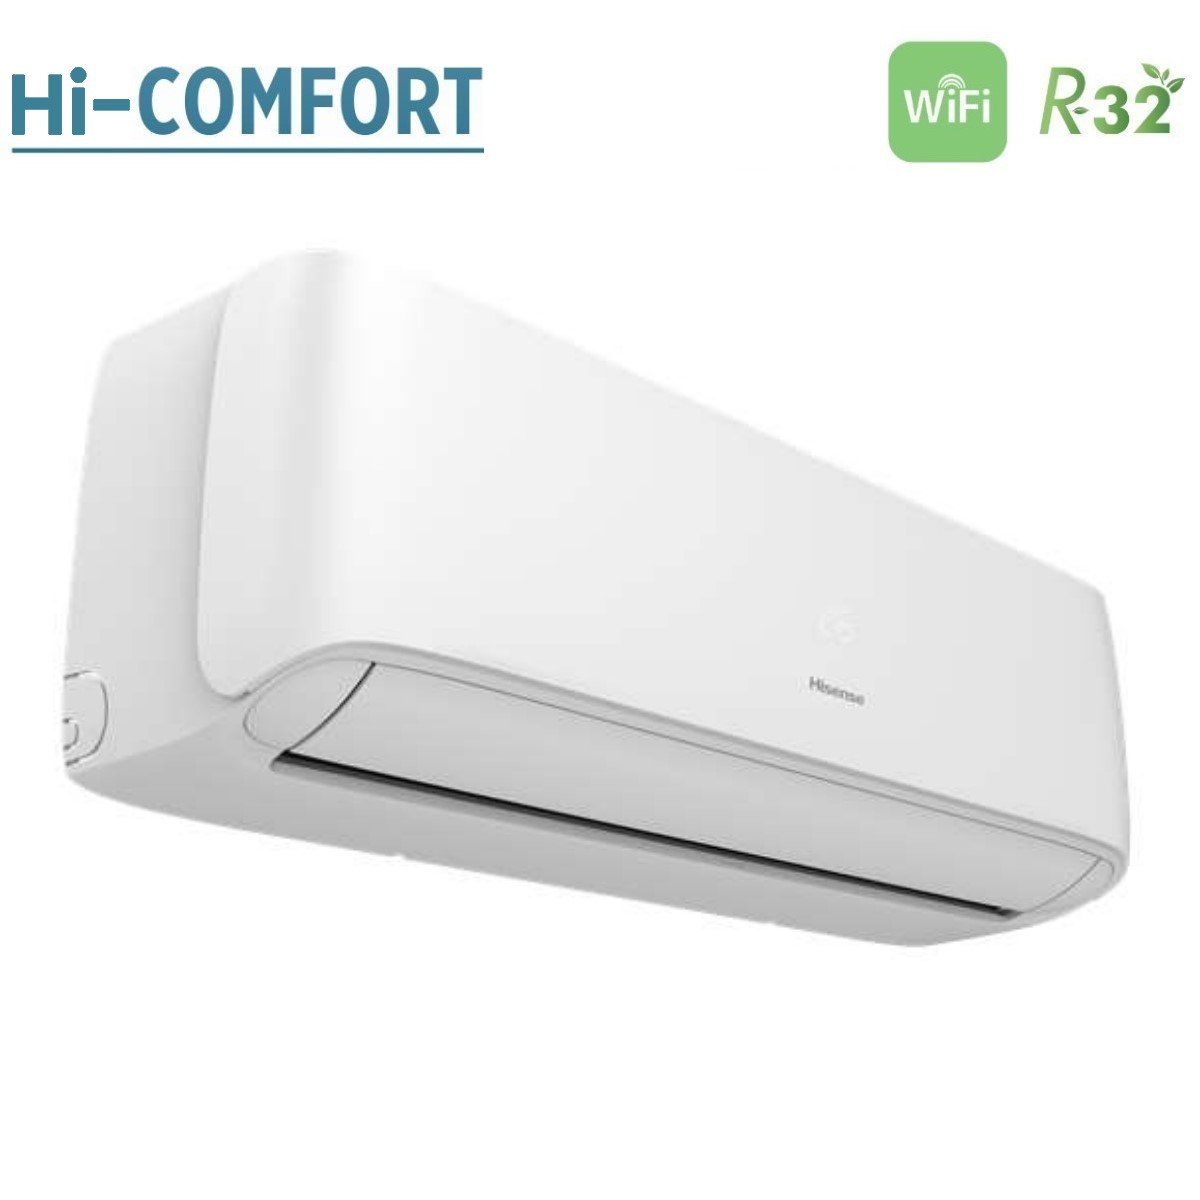 immagine-3-hisense-climatizzatore-condizionatore-hisense-dual-split-inverter-serie-hi-comfort-99-con-2amw42u4rgc-r-32-wi-fi-integrato-90009000-novita